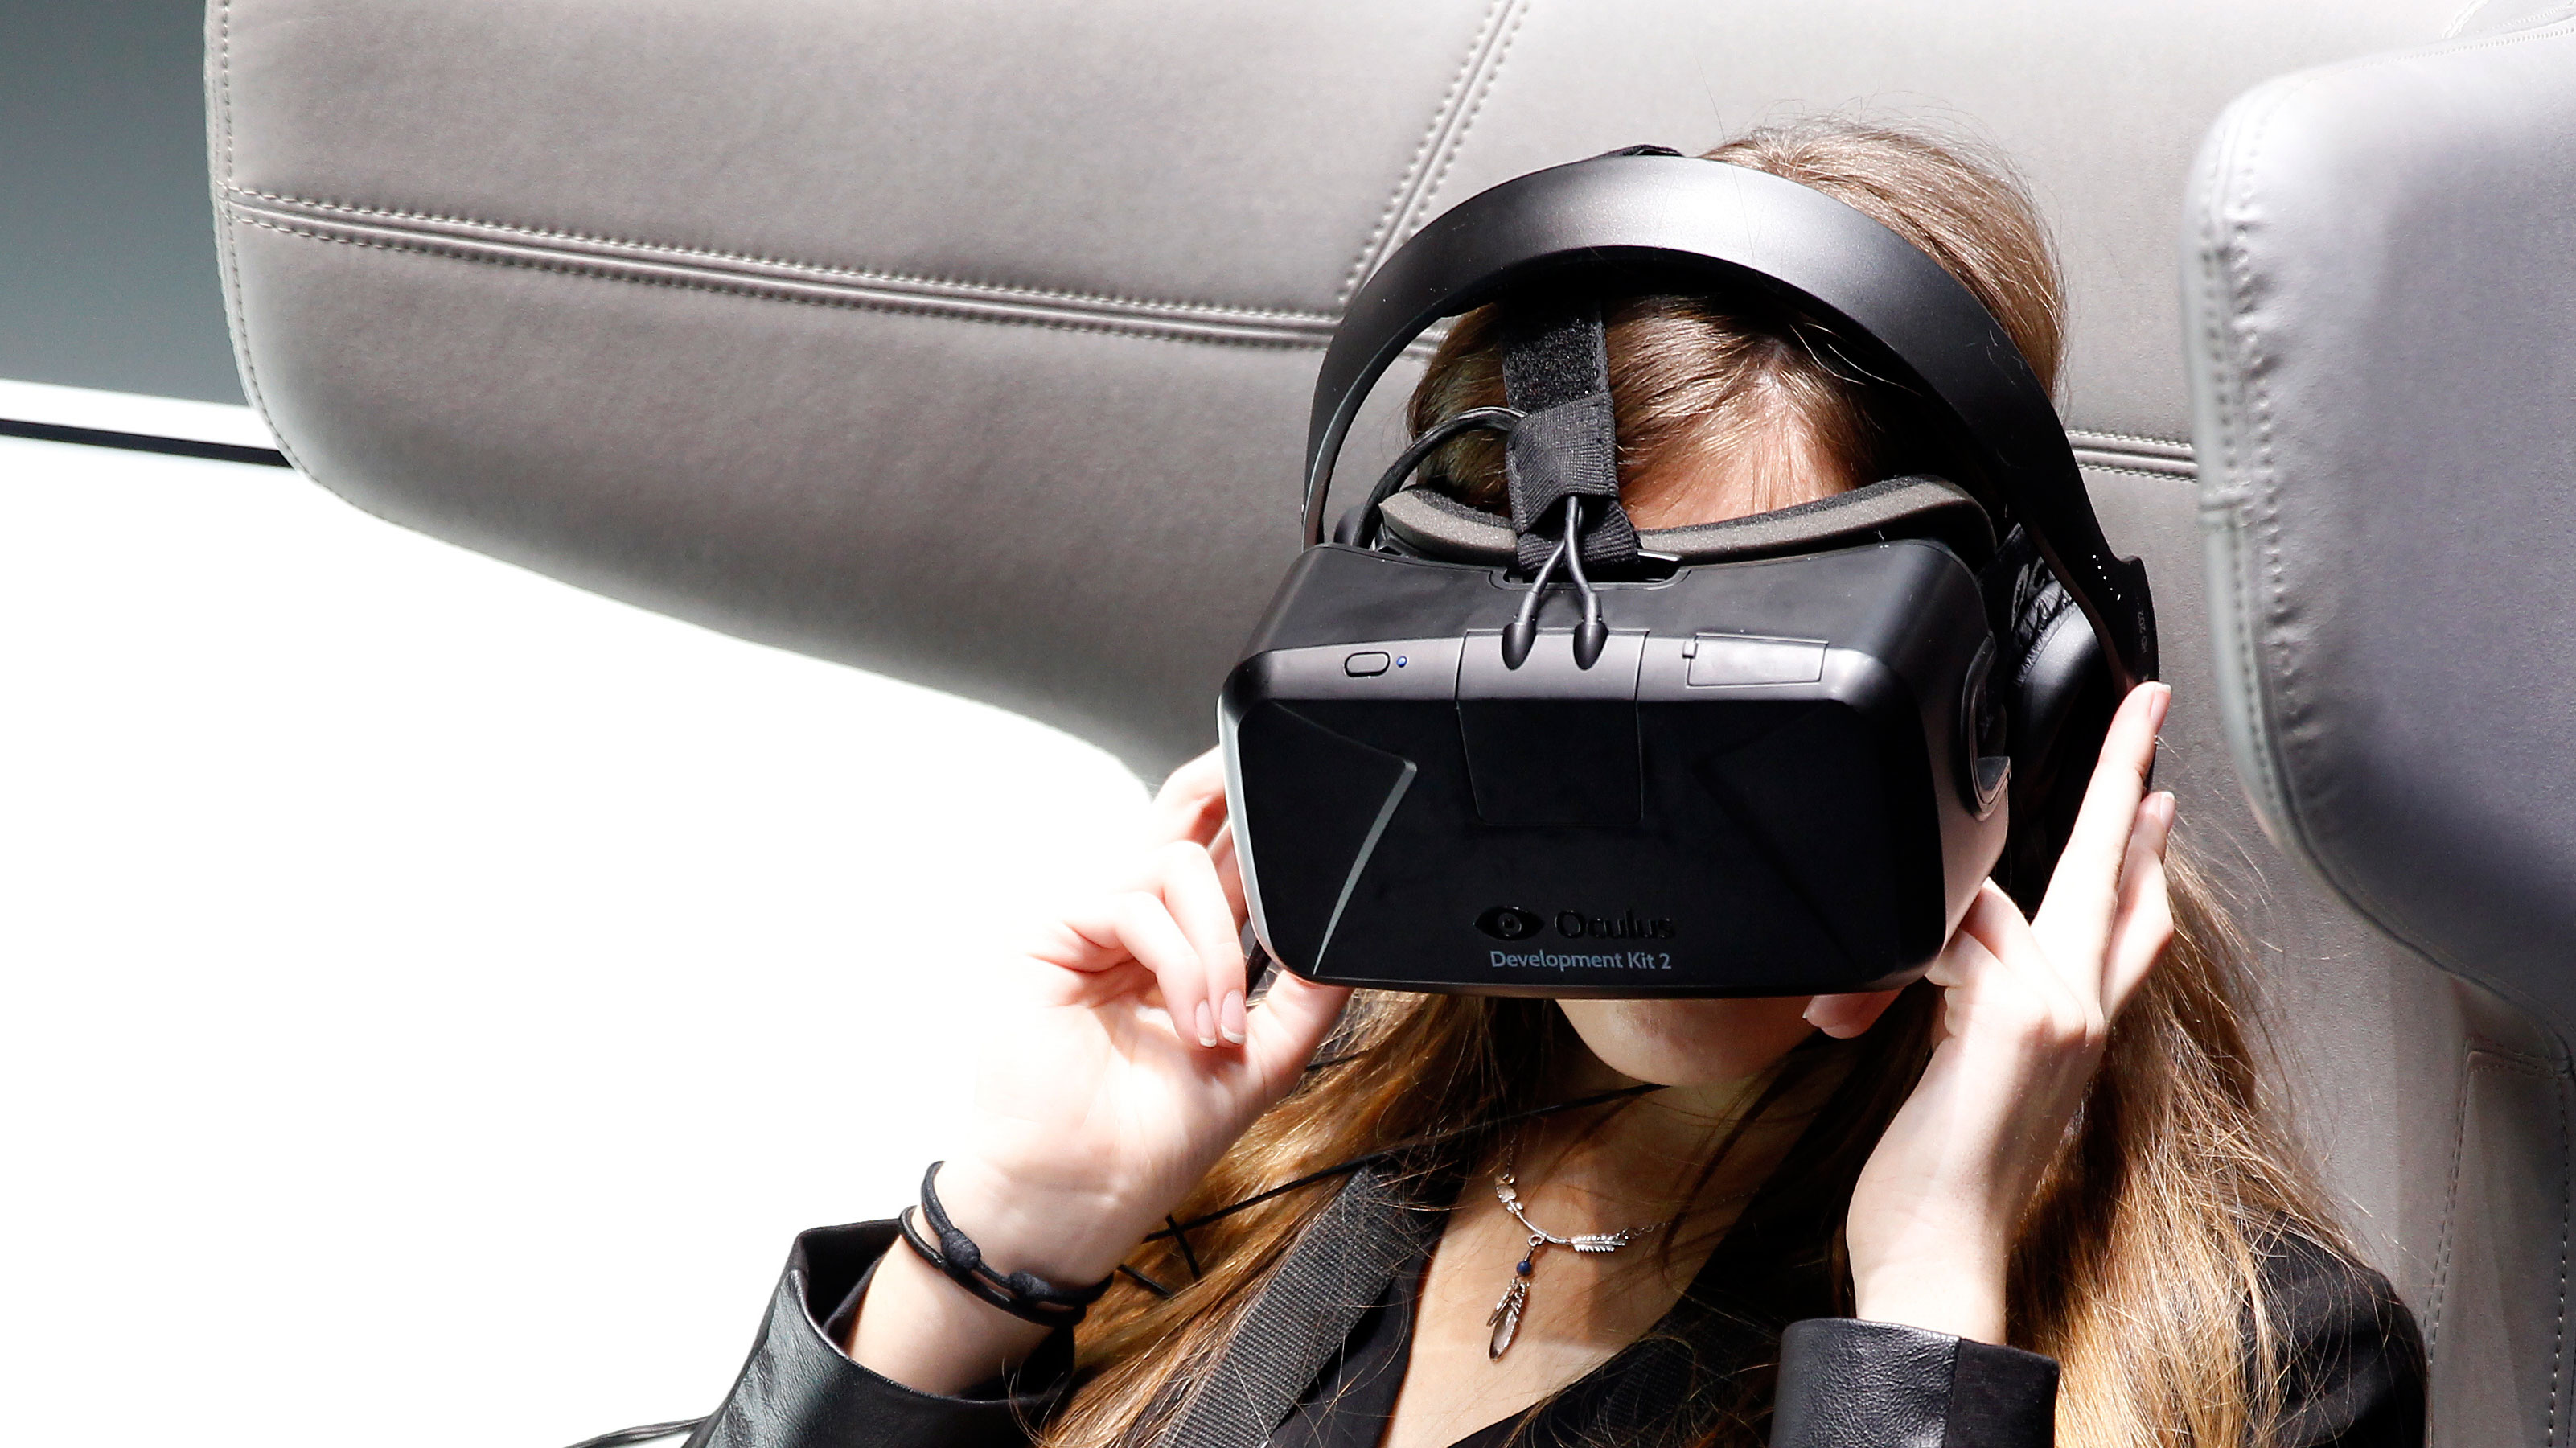 The Oculus Rift 2 VR headset is £100 less on  UK